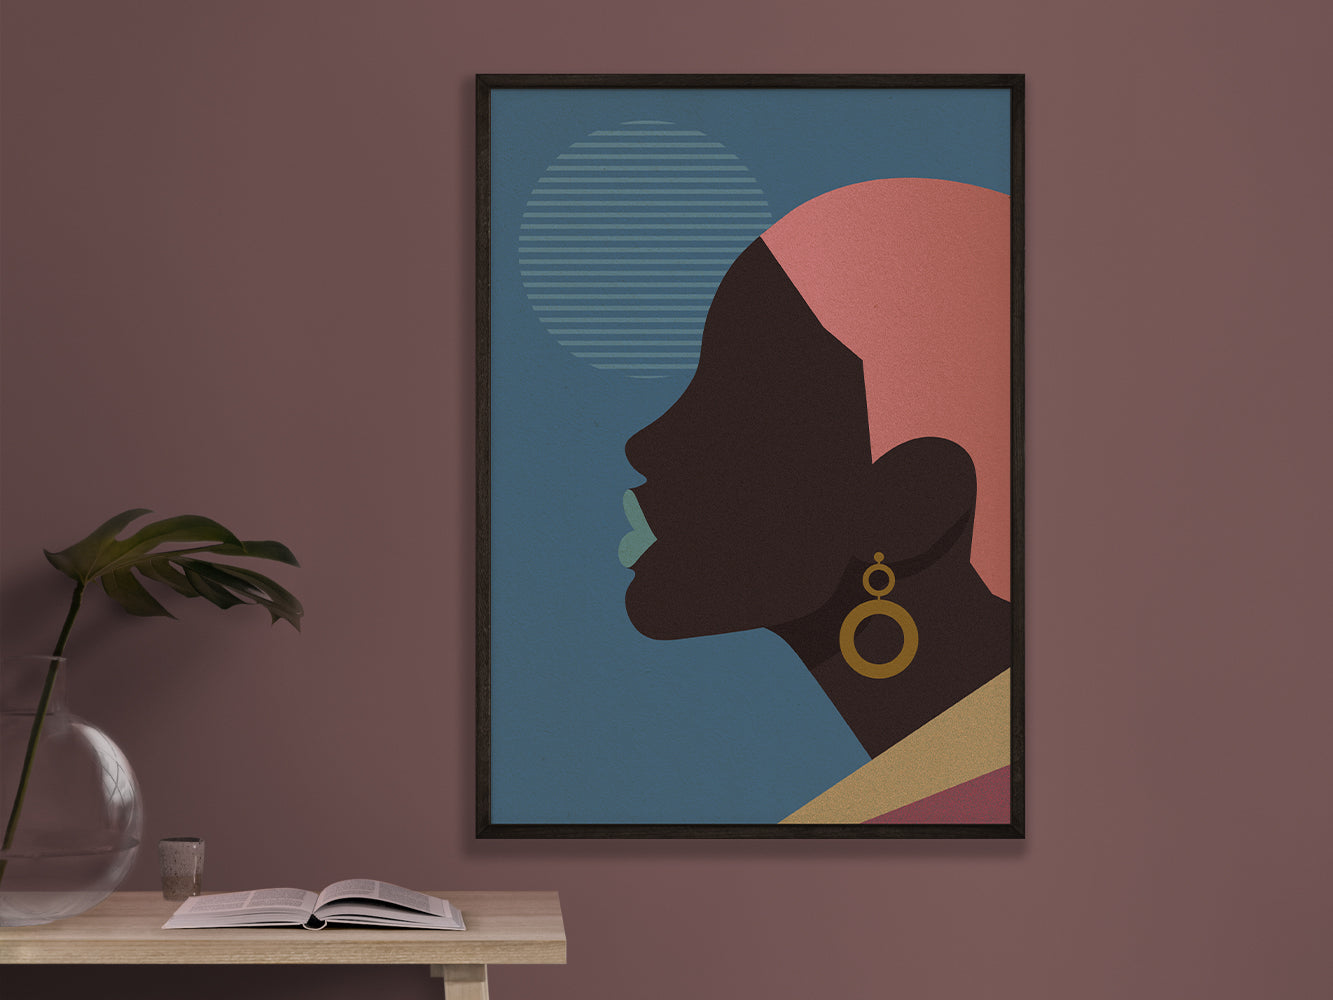 DRUCK ›Afrika Fashion 02‹ / Art Print, Ethno, Mode, Illustration, Wandbild, grafisch, minimalistisch, stylish, Trend, sinnlich, Silhouette